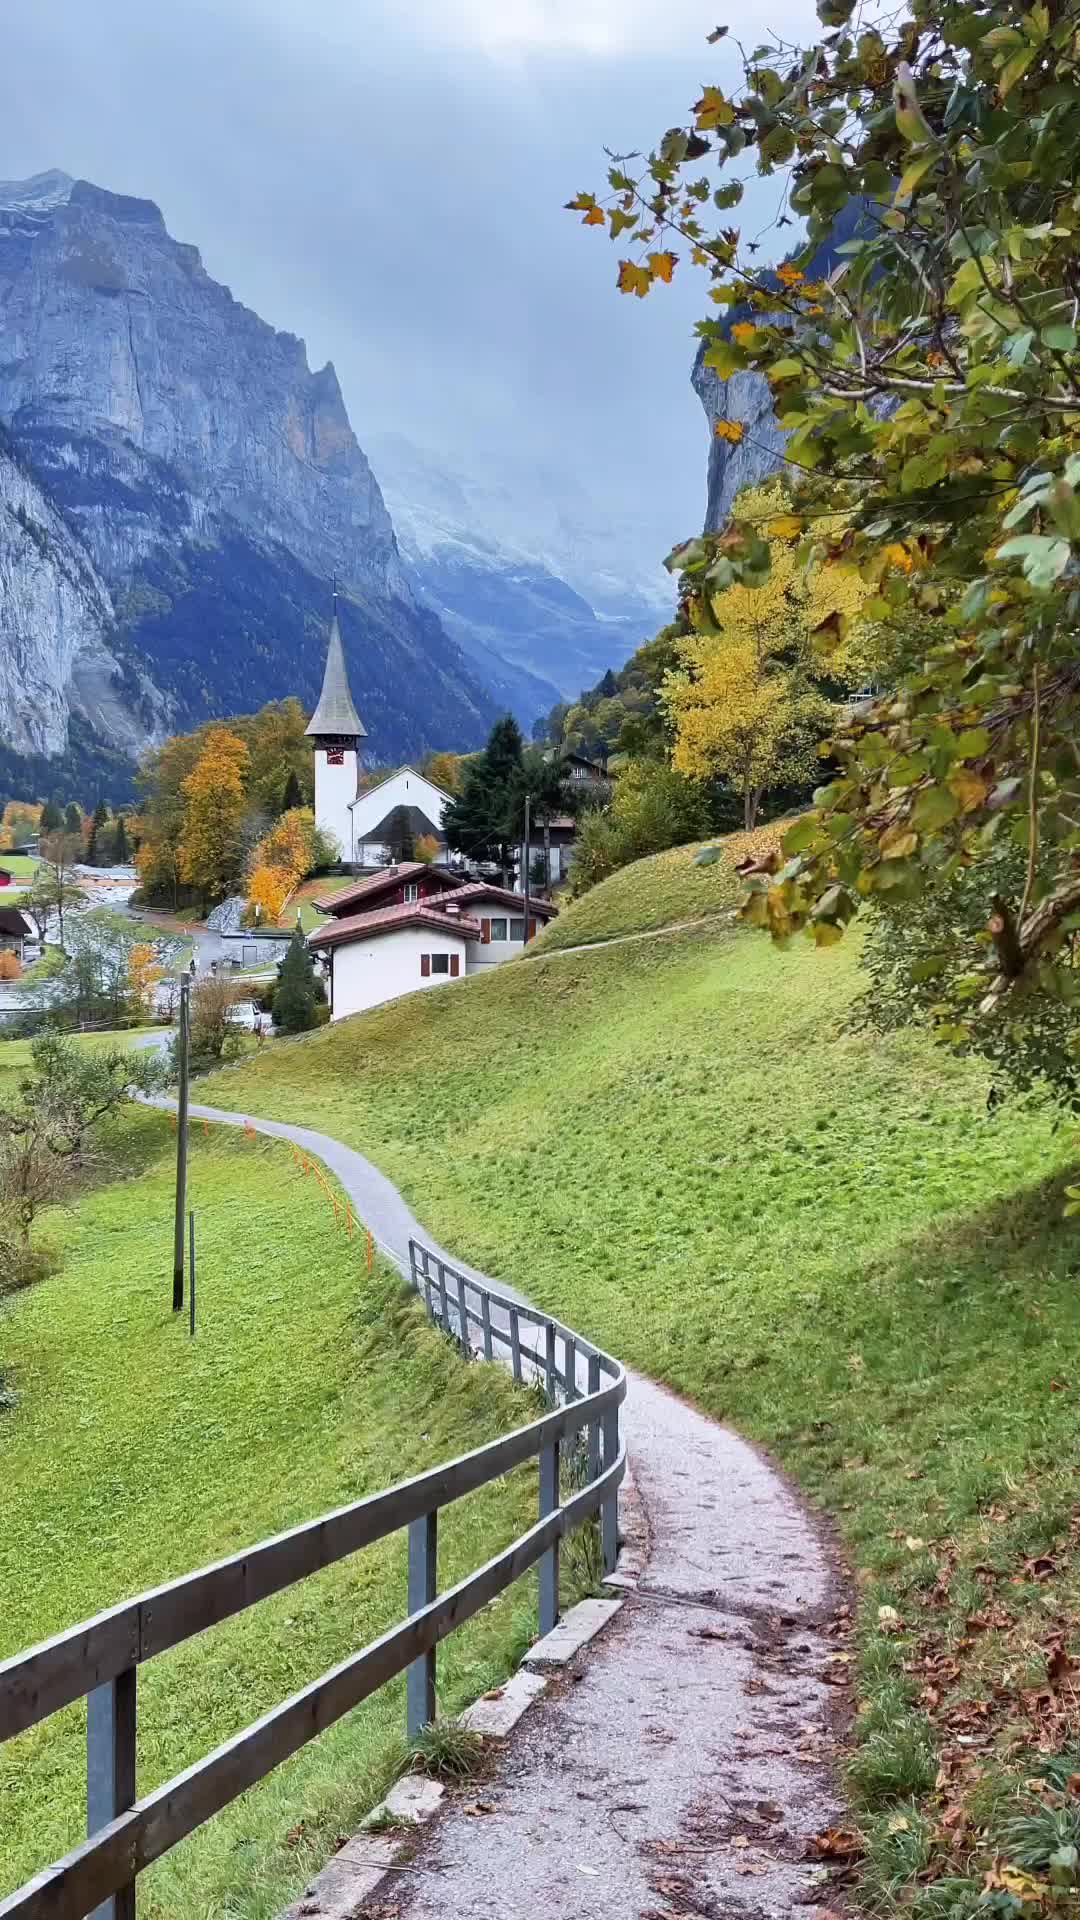 Most Instagrammable Spot in Lauterbrunnen, Switzerland